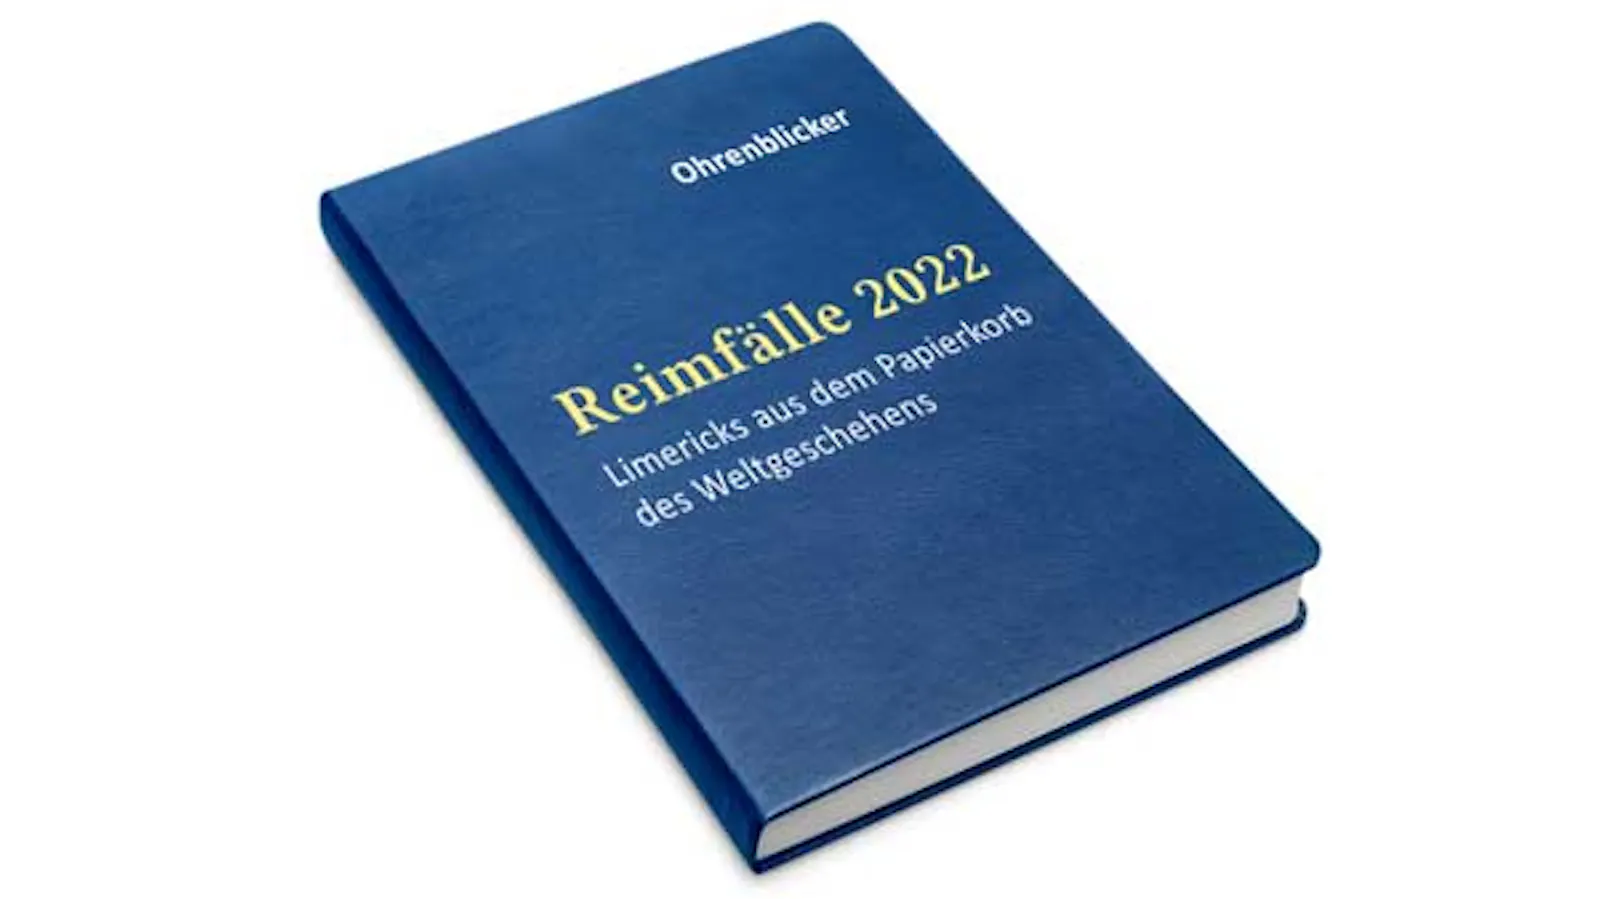 Buch mit dem Titel "Reimfälle 2022 - Limericks aus dem Papierkorb des Weltgeschehens"